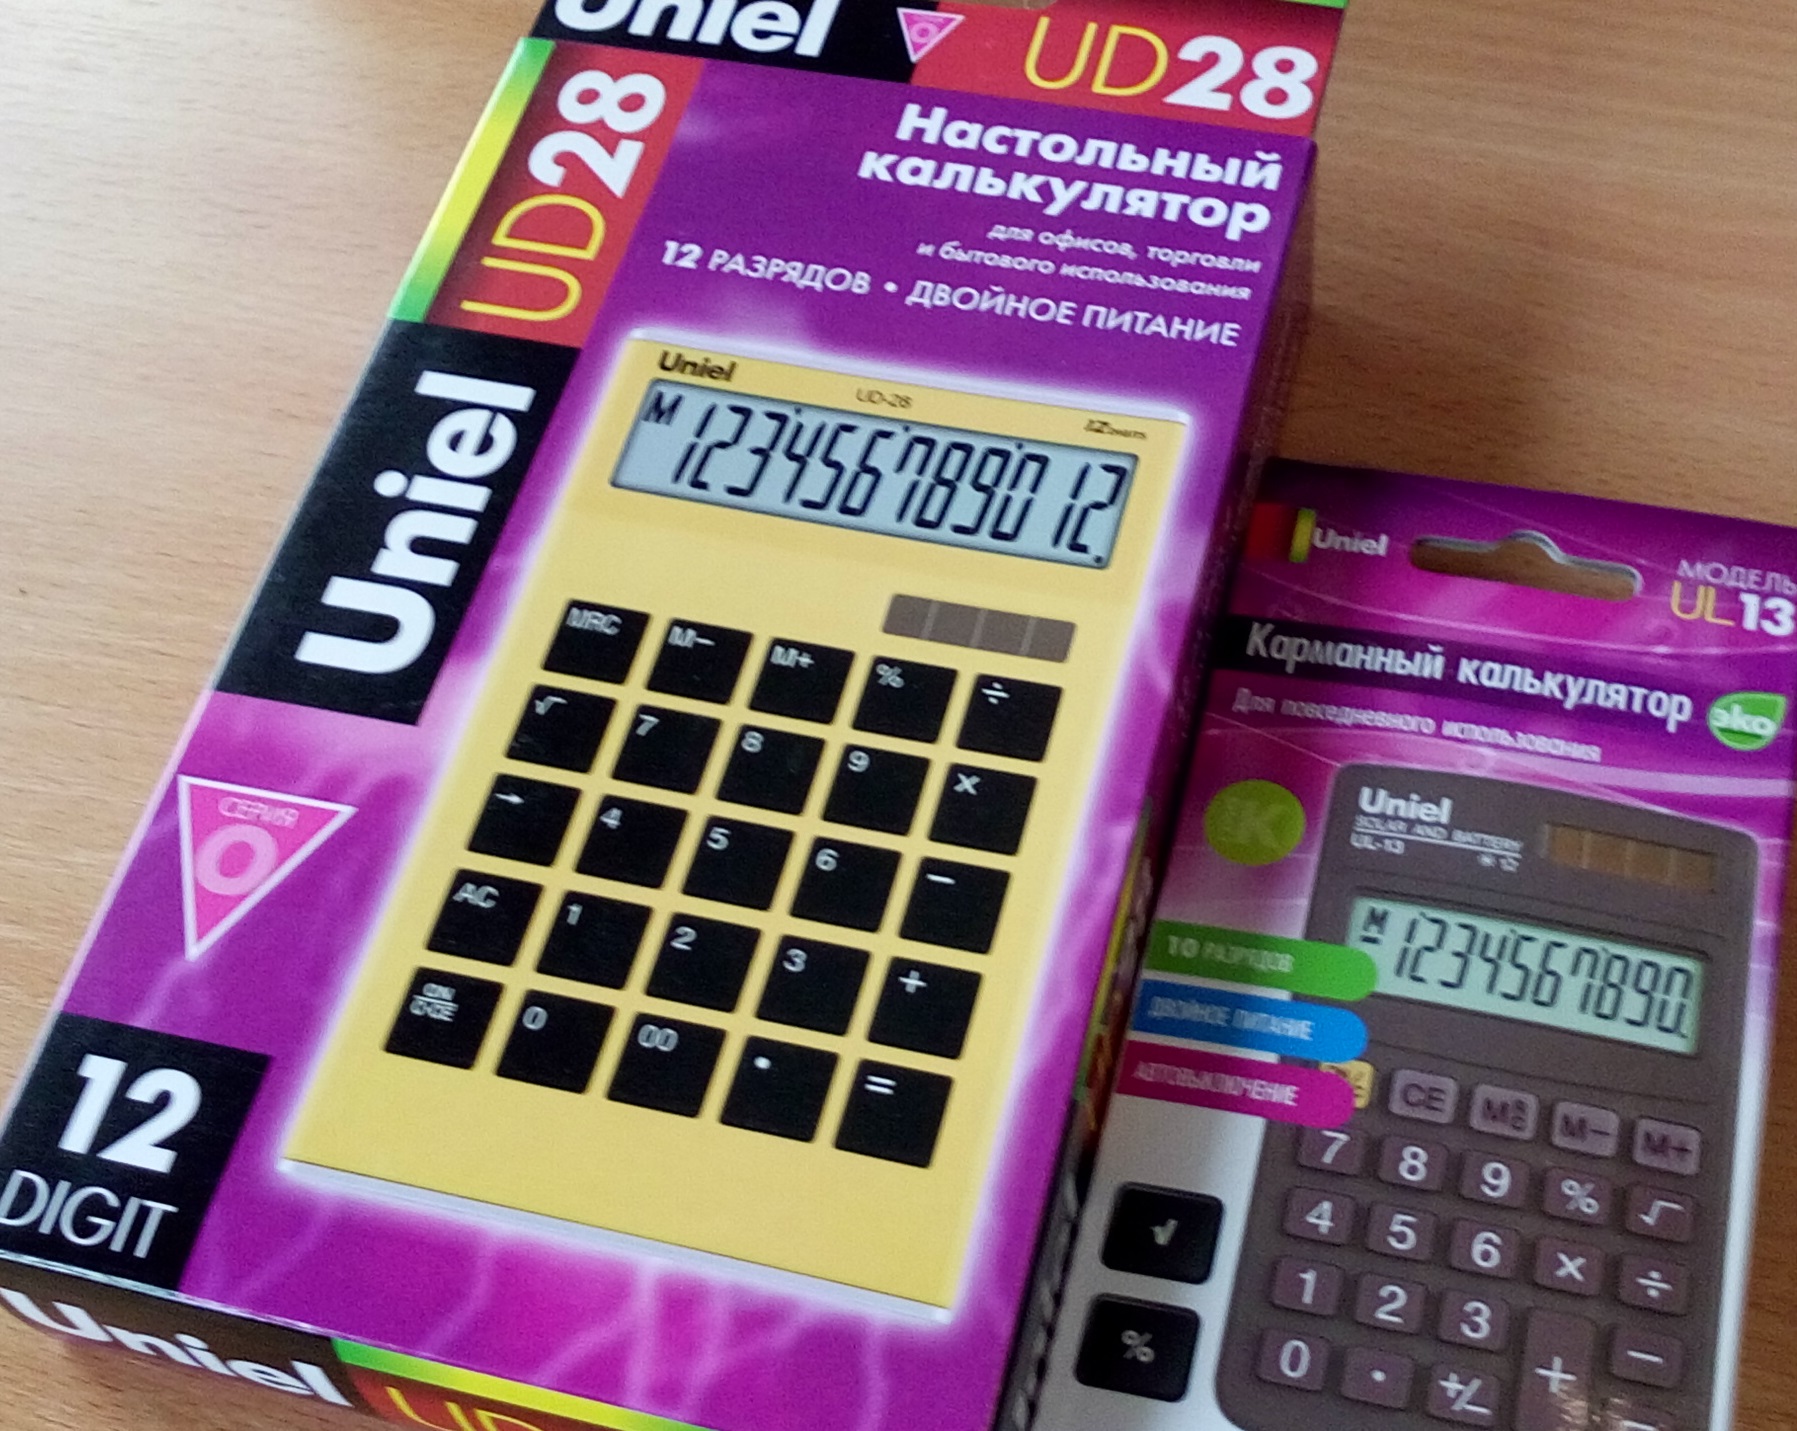 Настольный калькулятор UD-28 + Карманный калькулятор UL-13